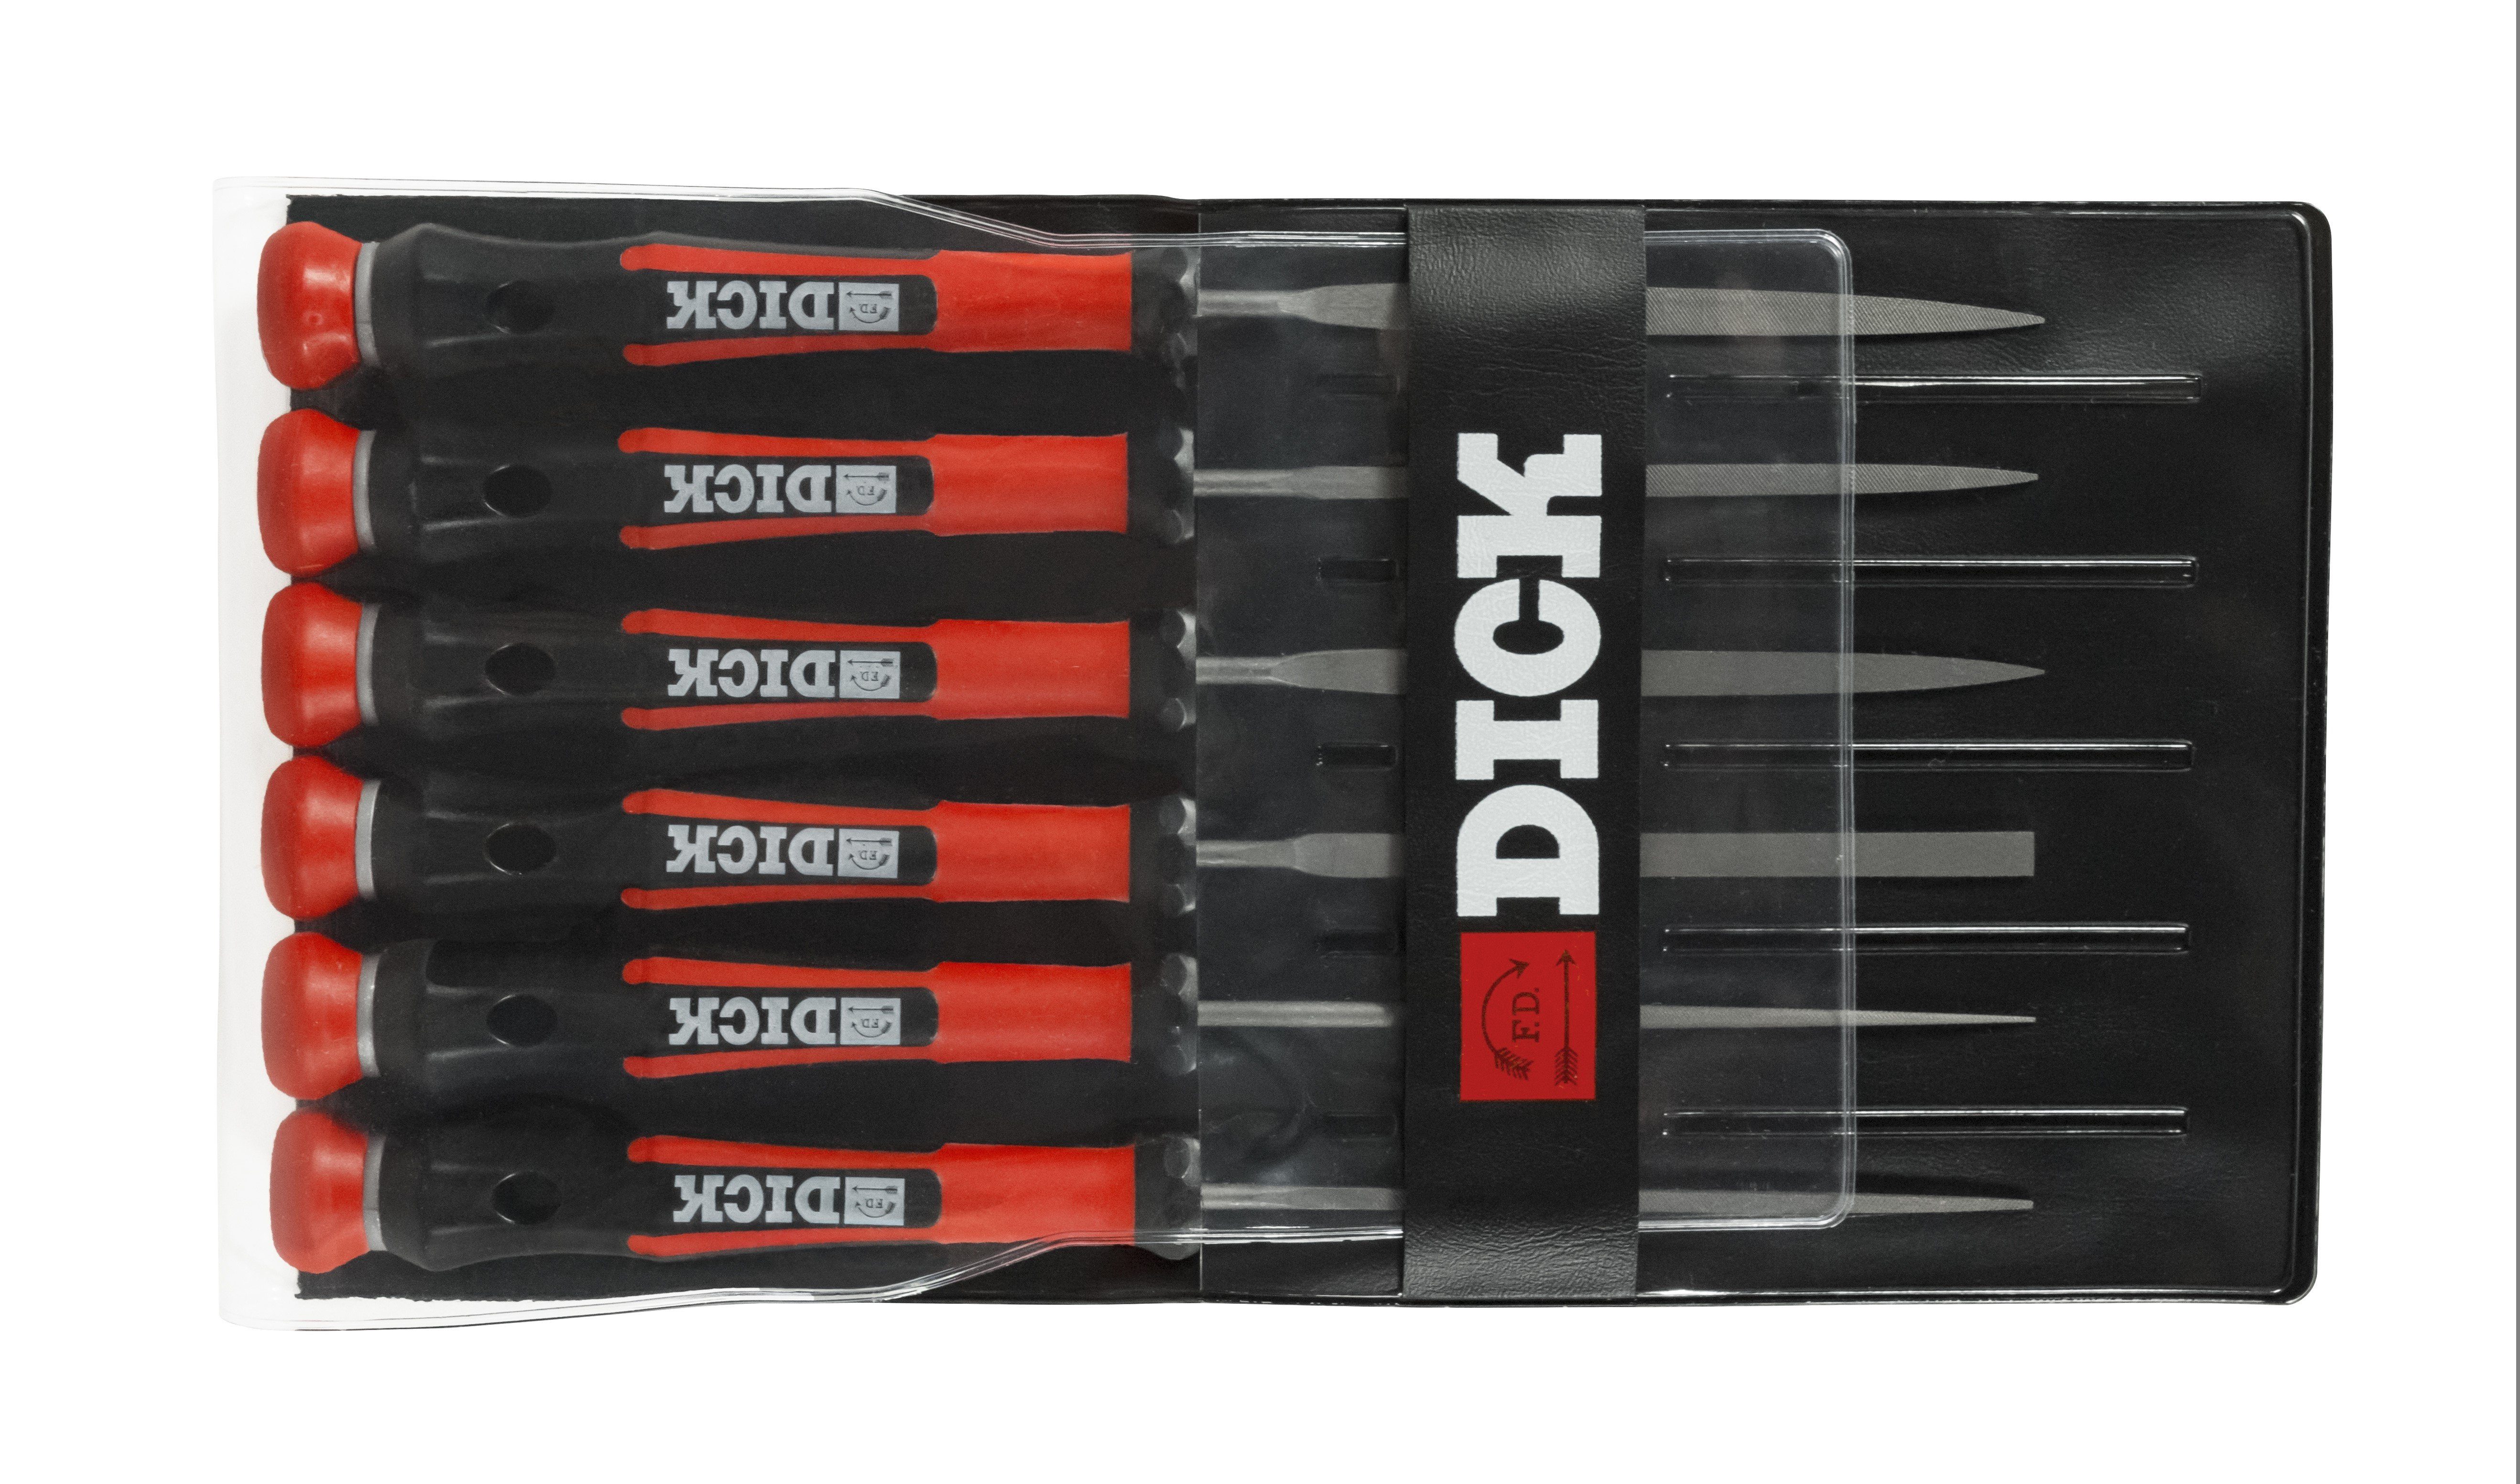 F. DICK Werkstattfeile Nadelfeilensatz 140mm Handwek für für und Hobby Stahl 6tlg Dick